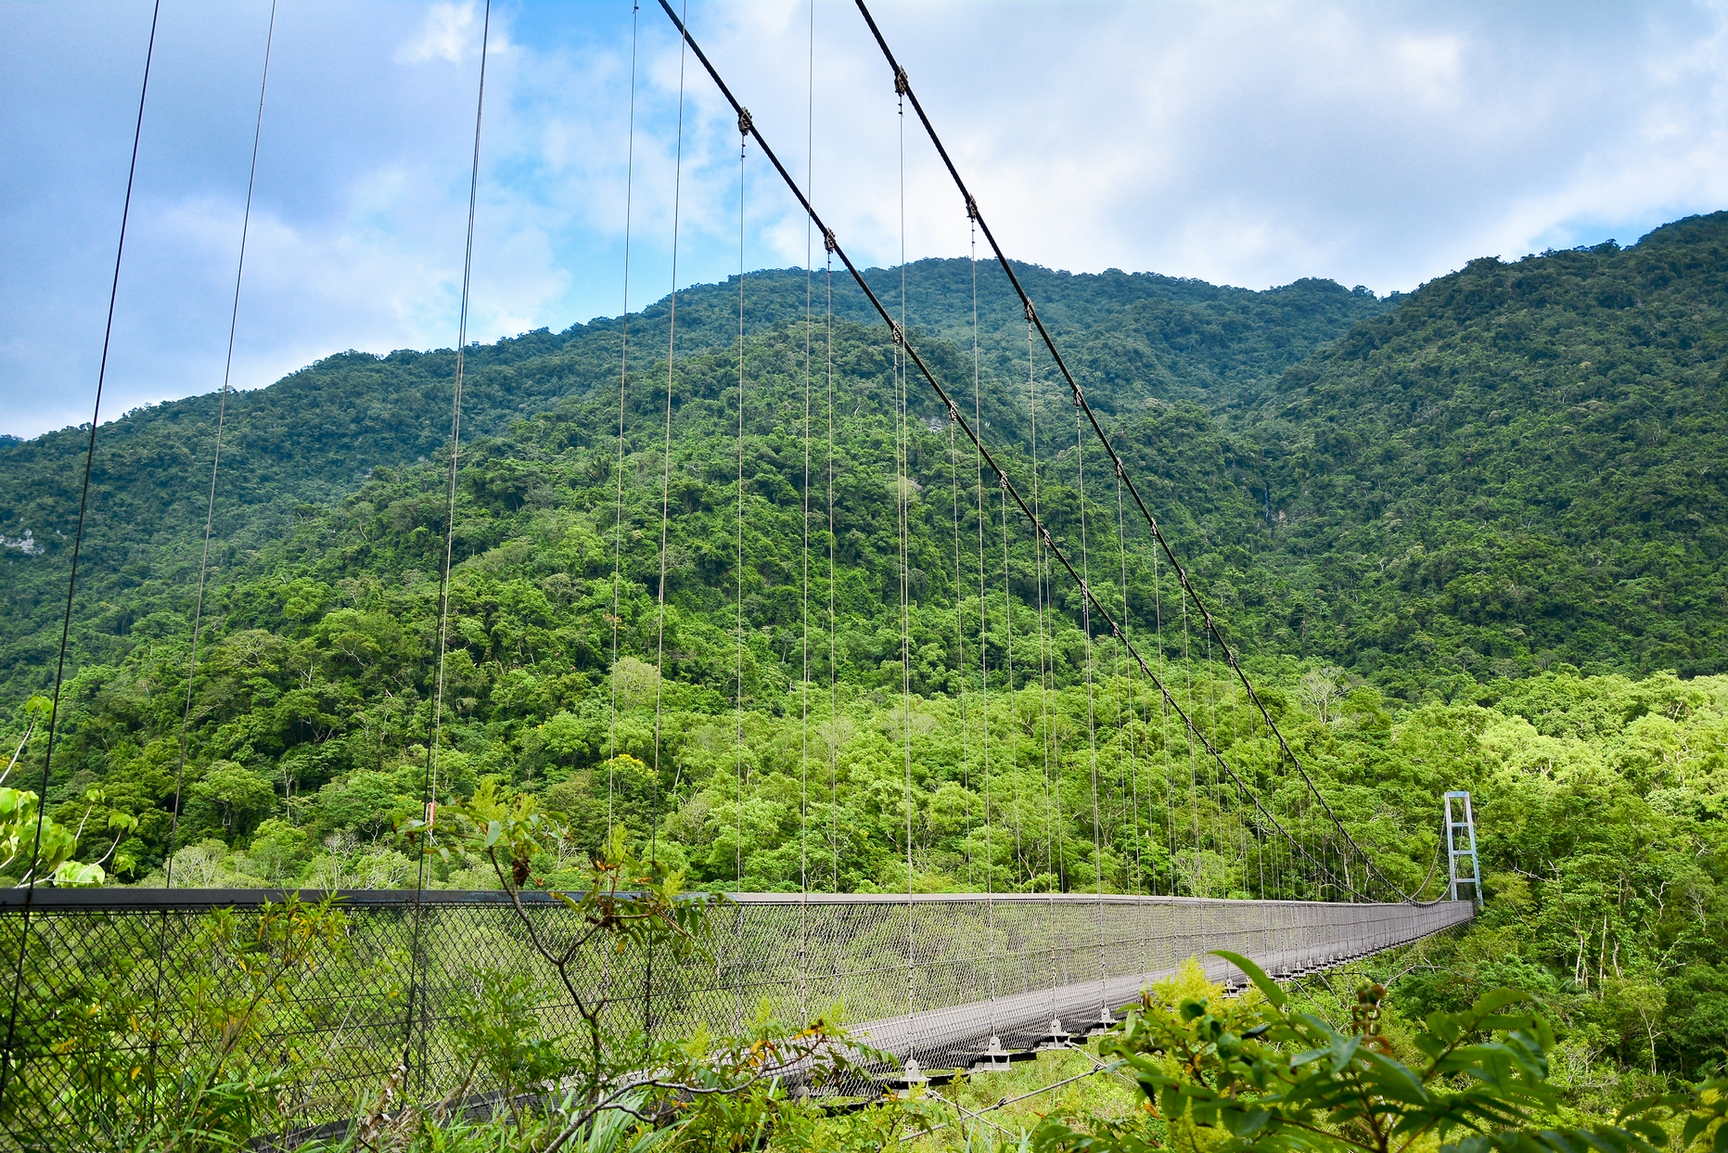 Batongguan Traversing Trail – Luming Suspension Bridge Section